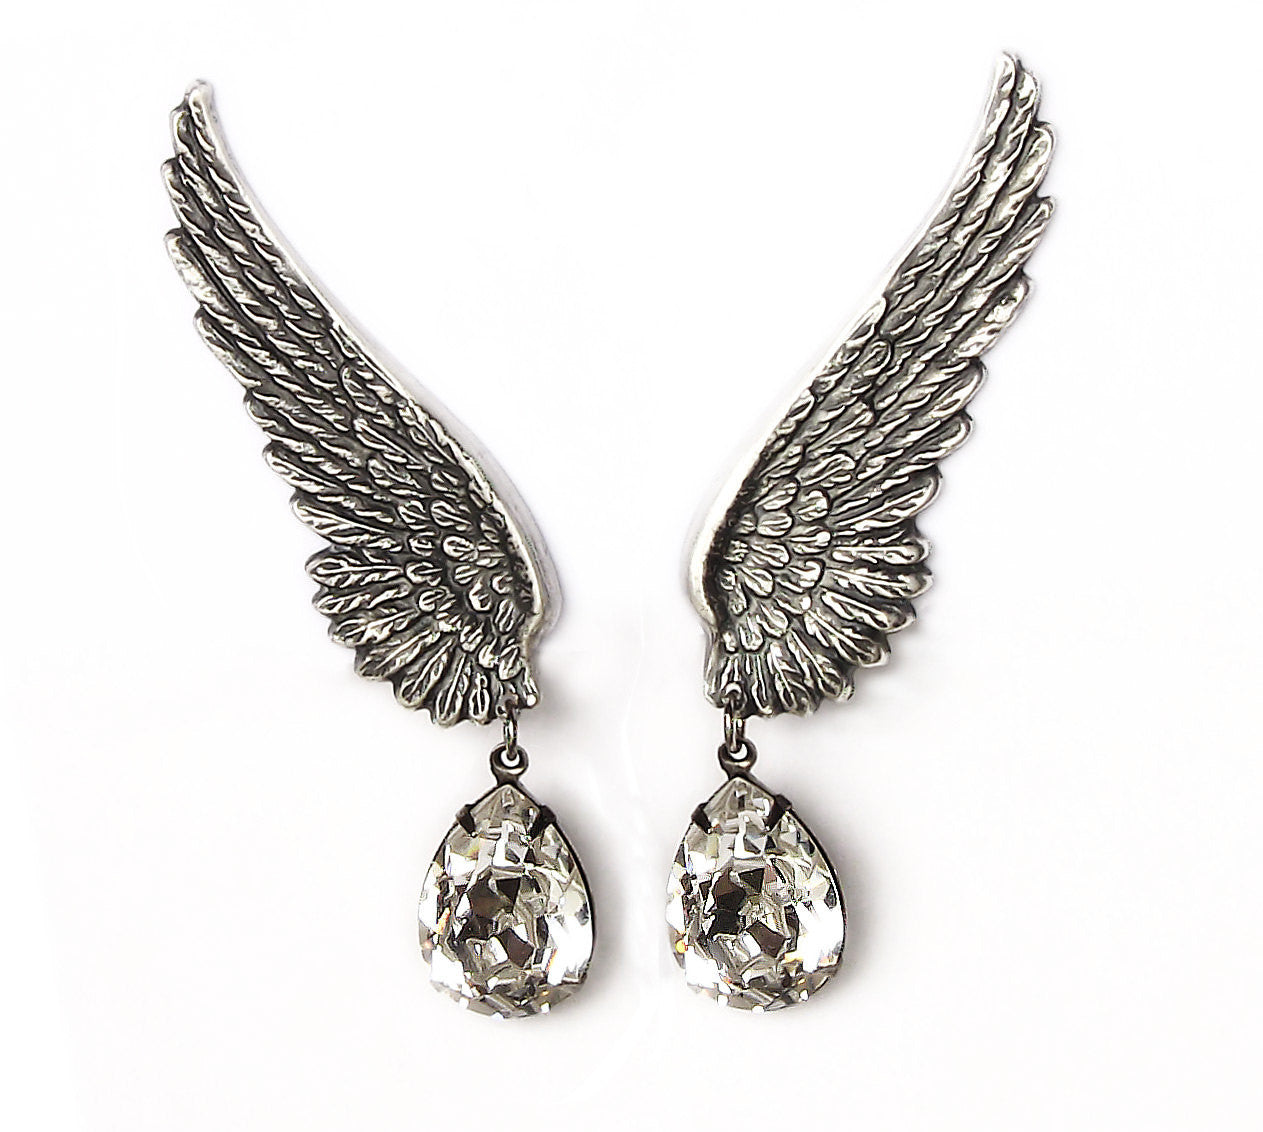 Silver Wings Earrings with Swarovski Drops - Aranwen's Jewelry
 - 3